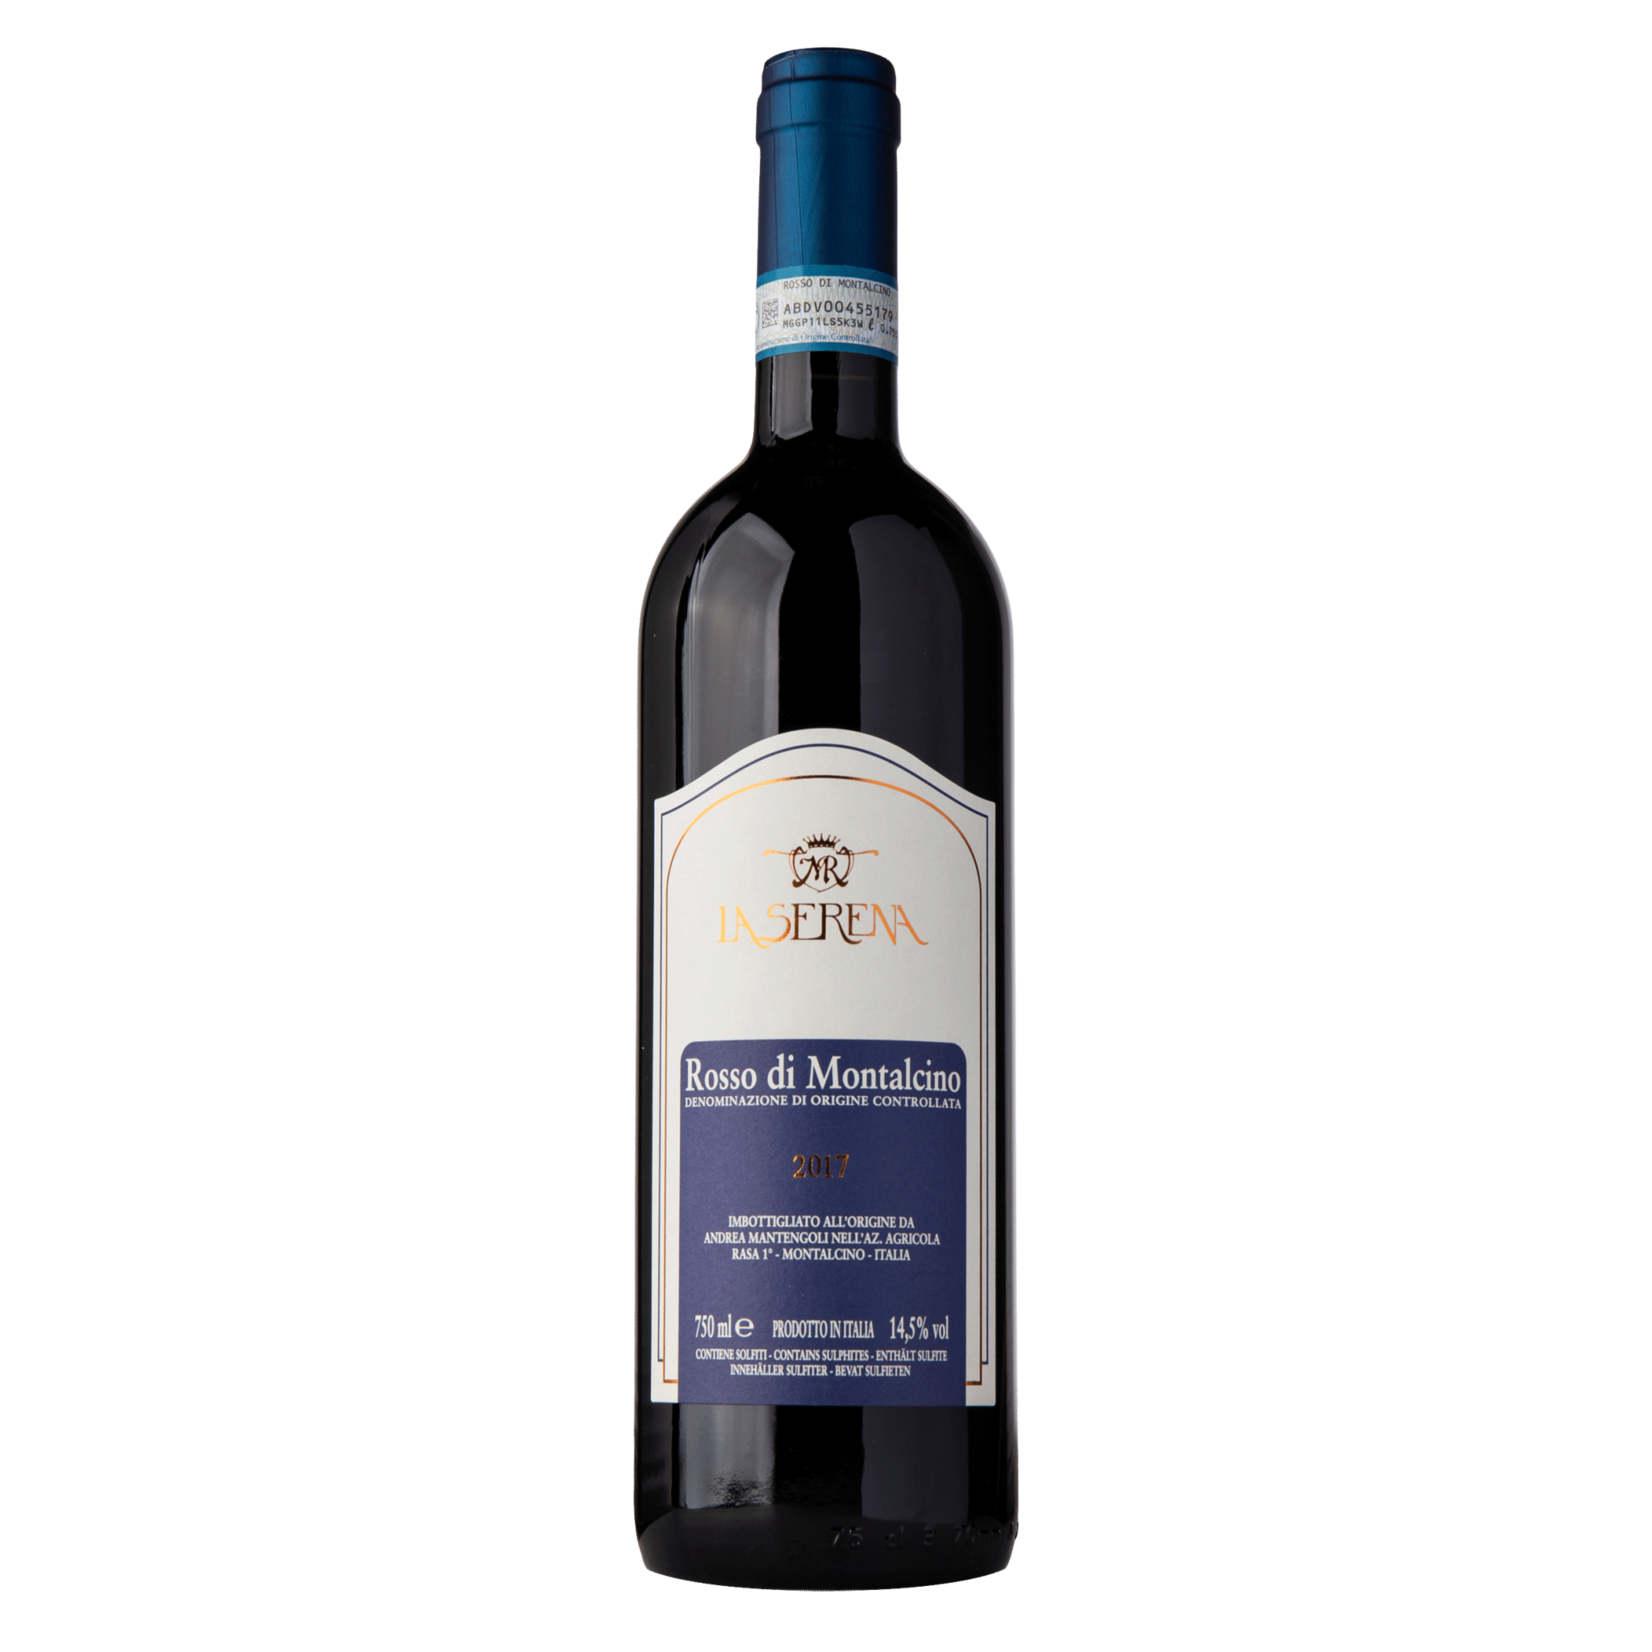 Wine La Serena Rosso di Montalcino 2017